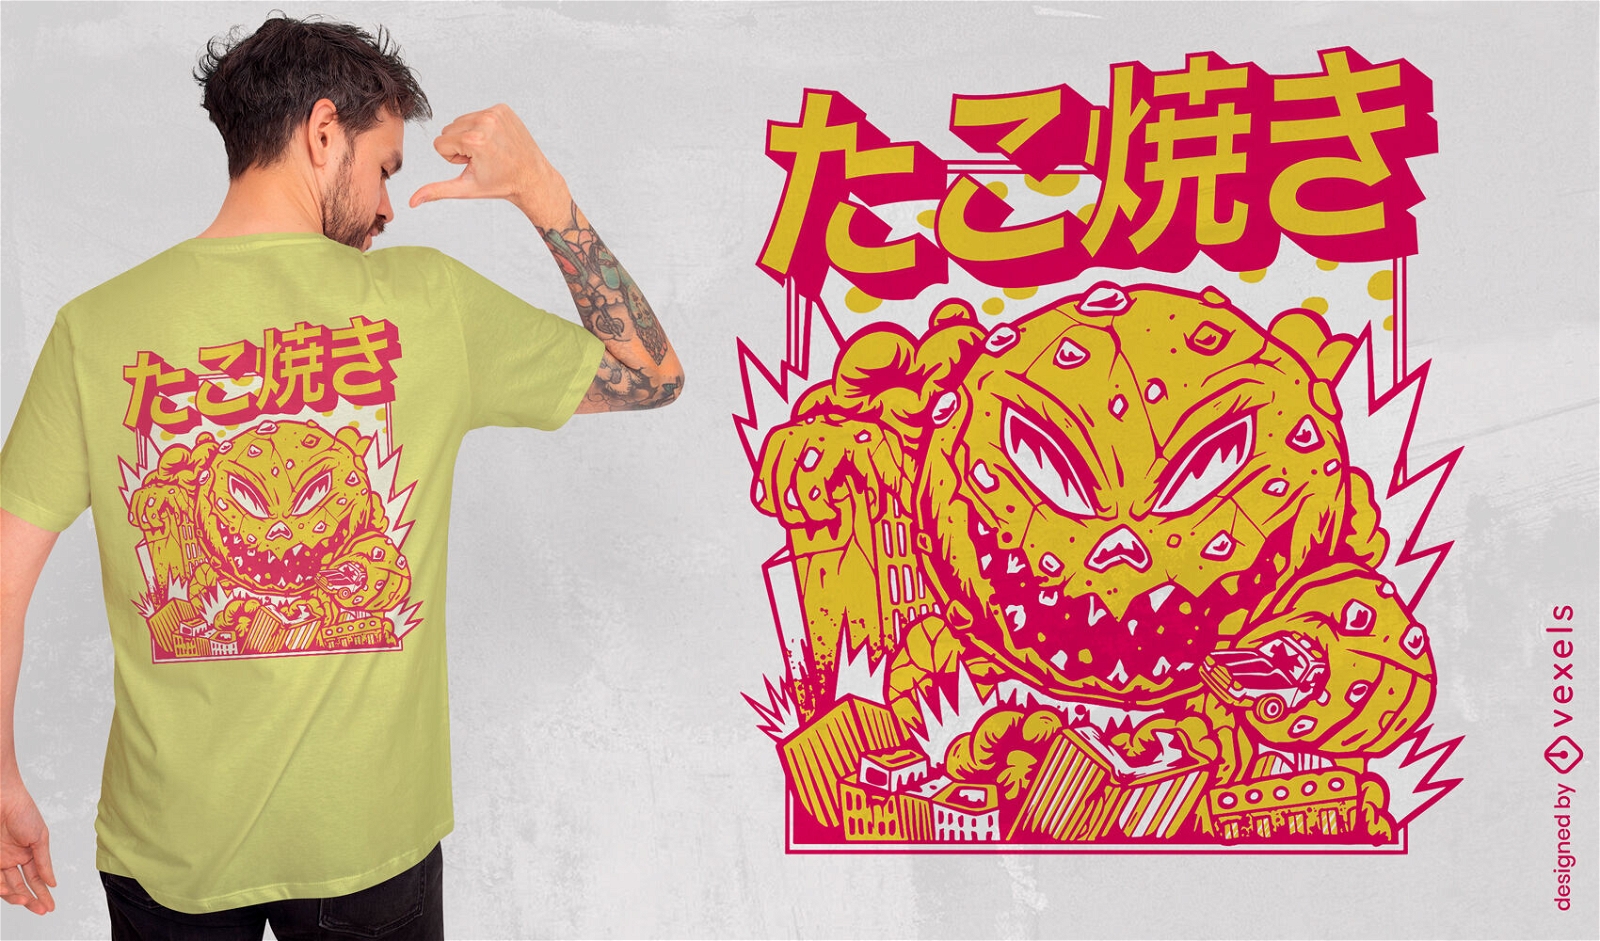 Takoyaki Japanese food monster t-shirt design